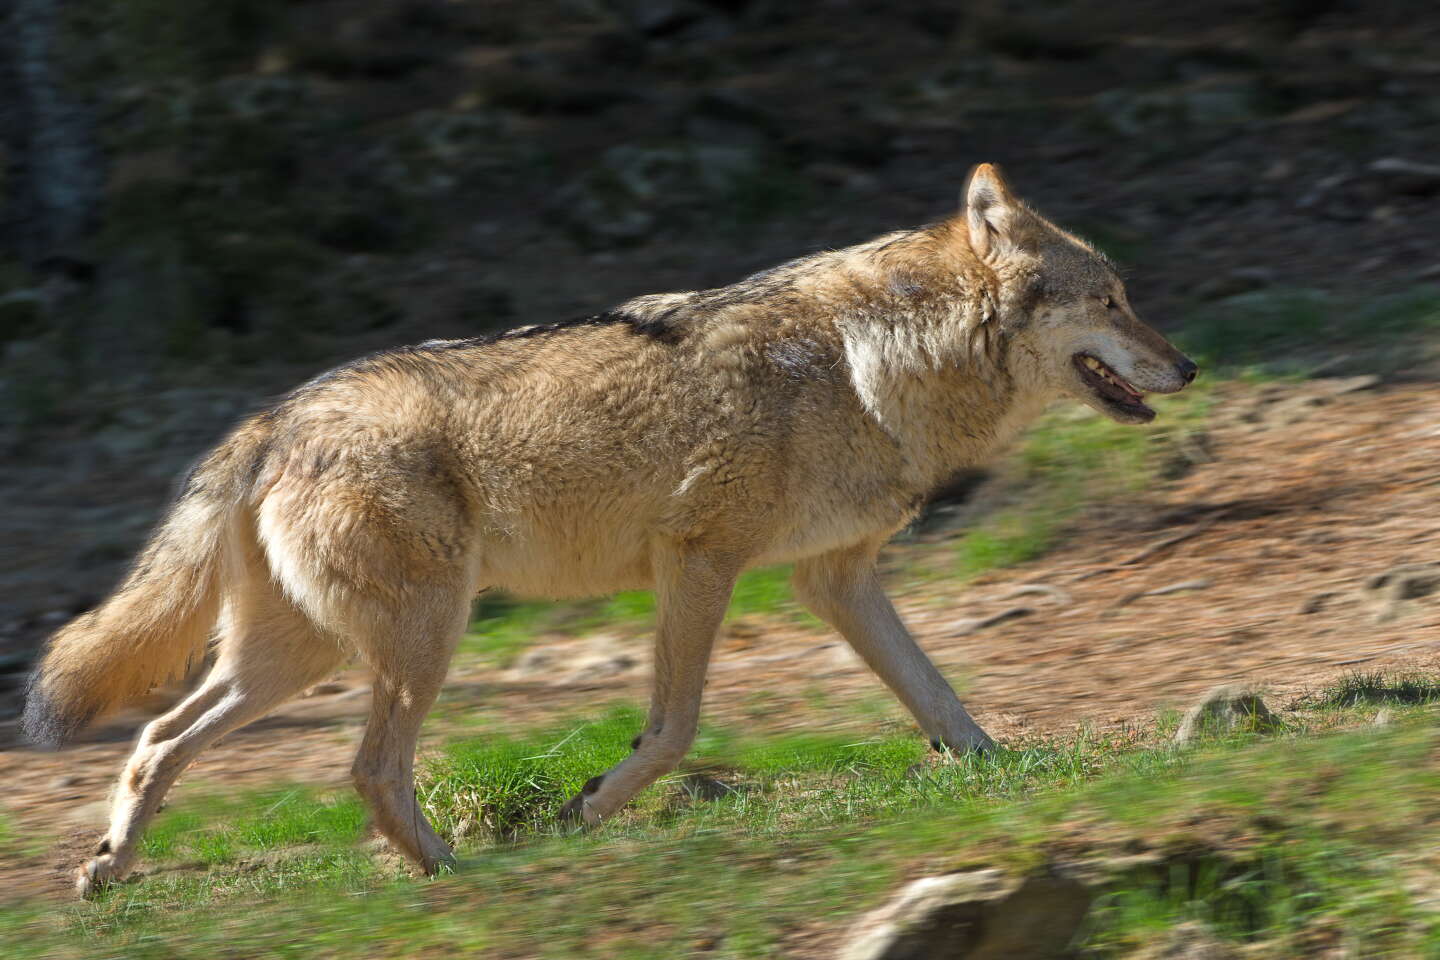 Plan loups et activités d’élevage : « L’efficacité de la régulation des loups par des tirs n’a pas été démontrée »